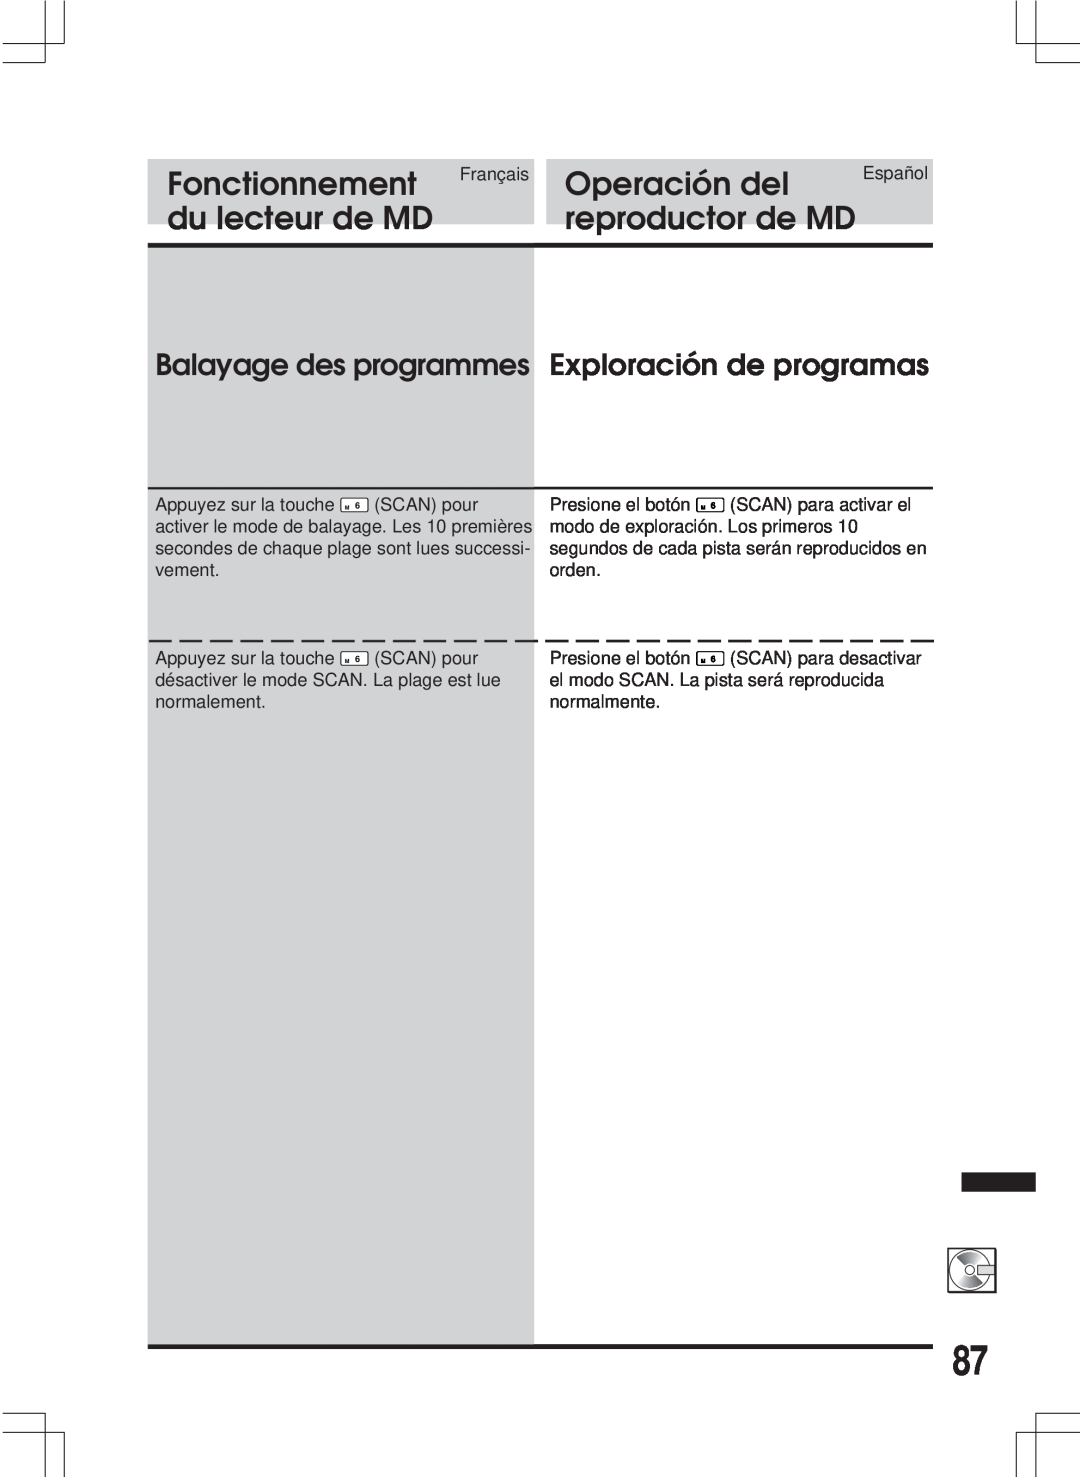 Alpine MDA-W890 Balayage des programmes Exploración de programas, Fonctionnement, Operación del, du lecteur de MD 